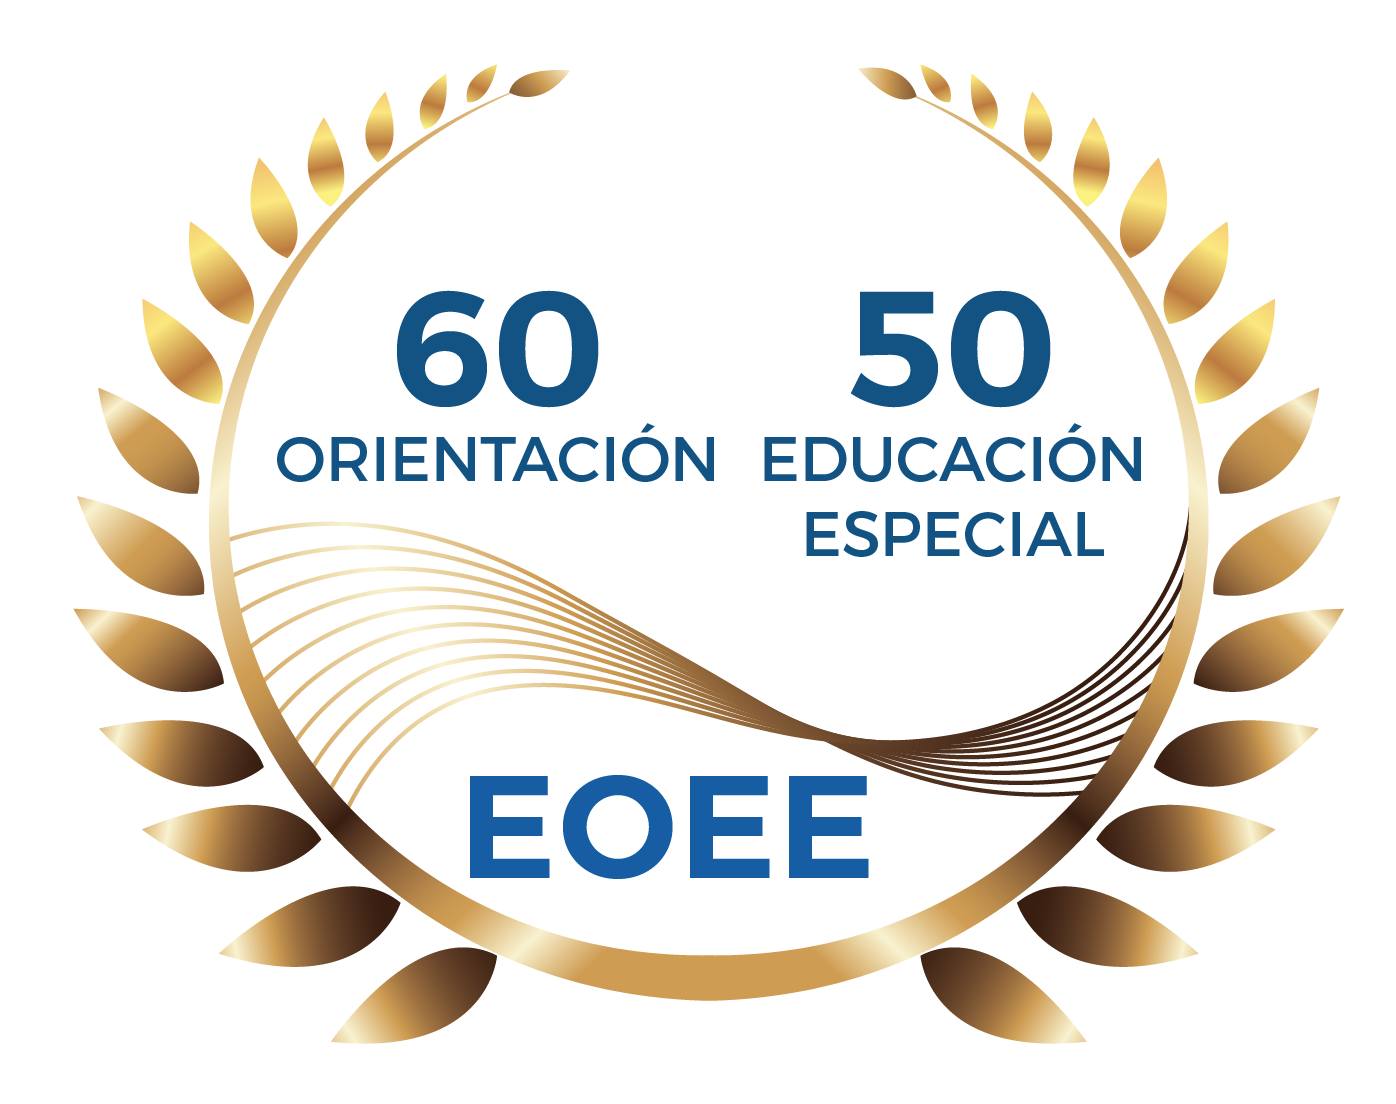 Corona de laureles con logo de la EOEE y leyenda de 60 años de Orientación y 50 años de Educación Especial